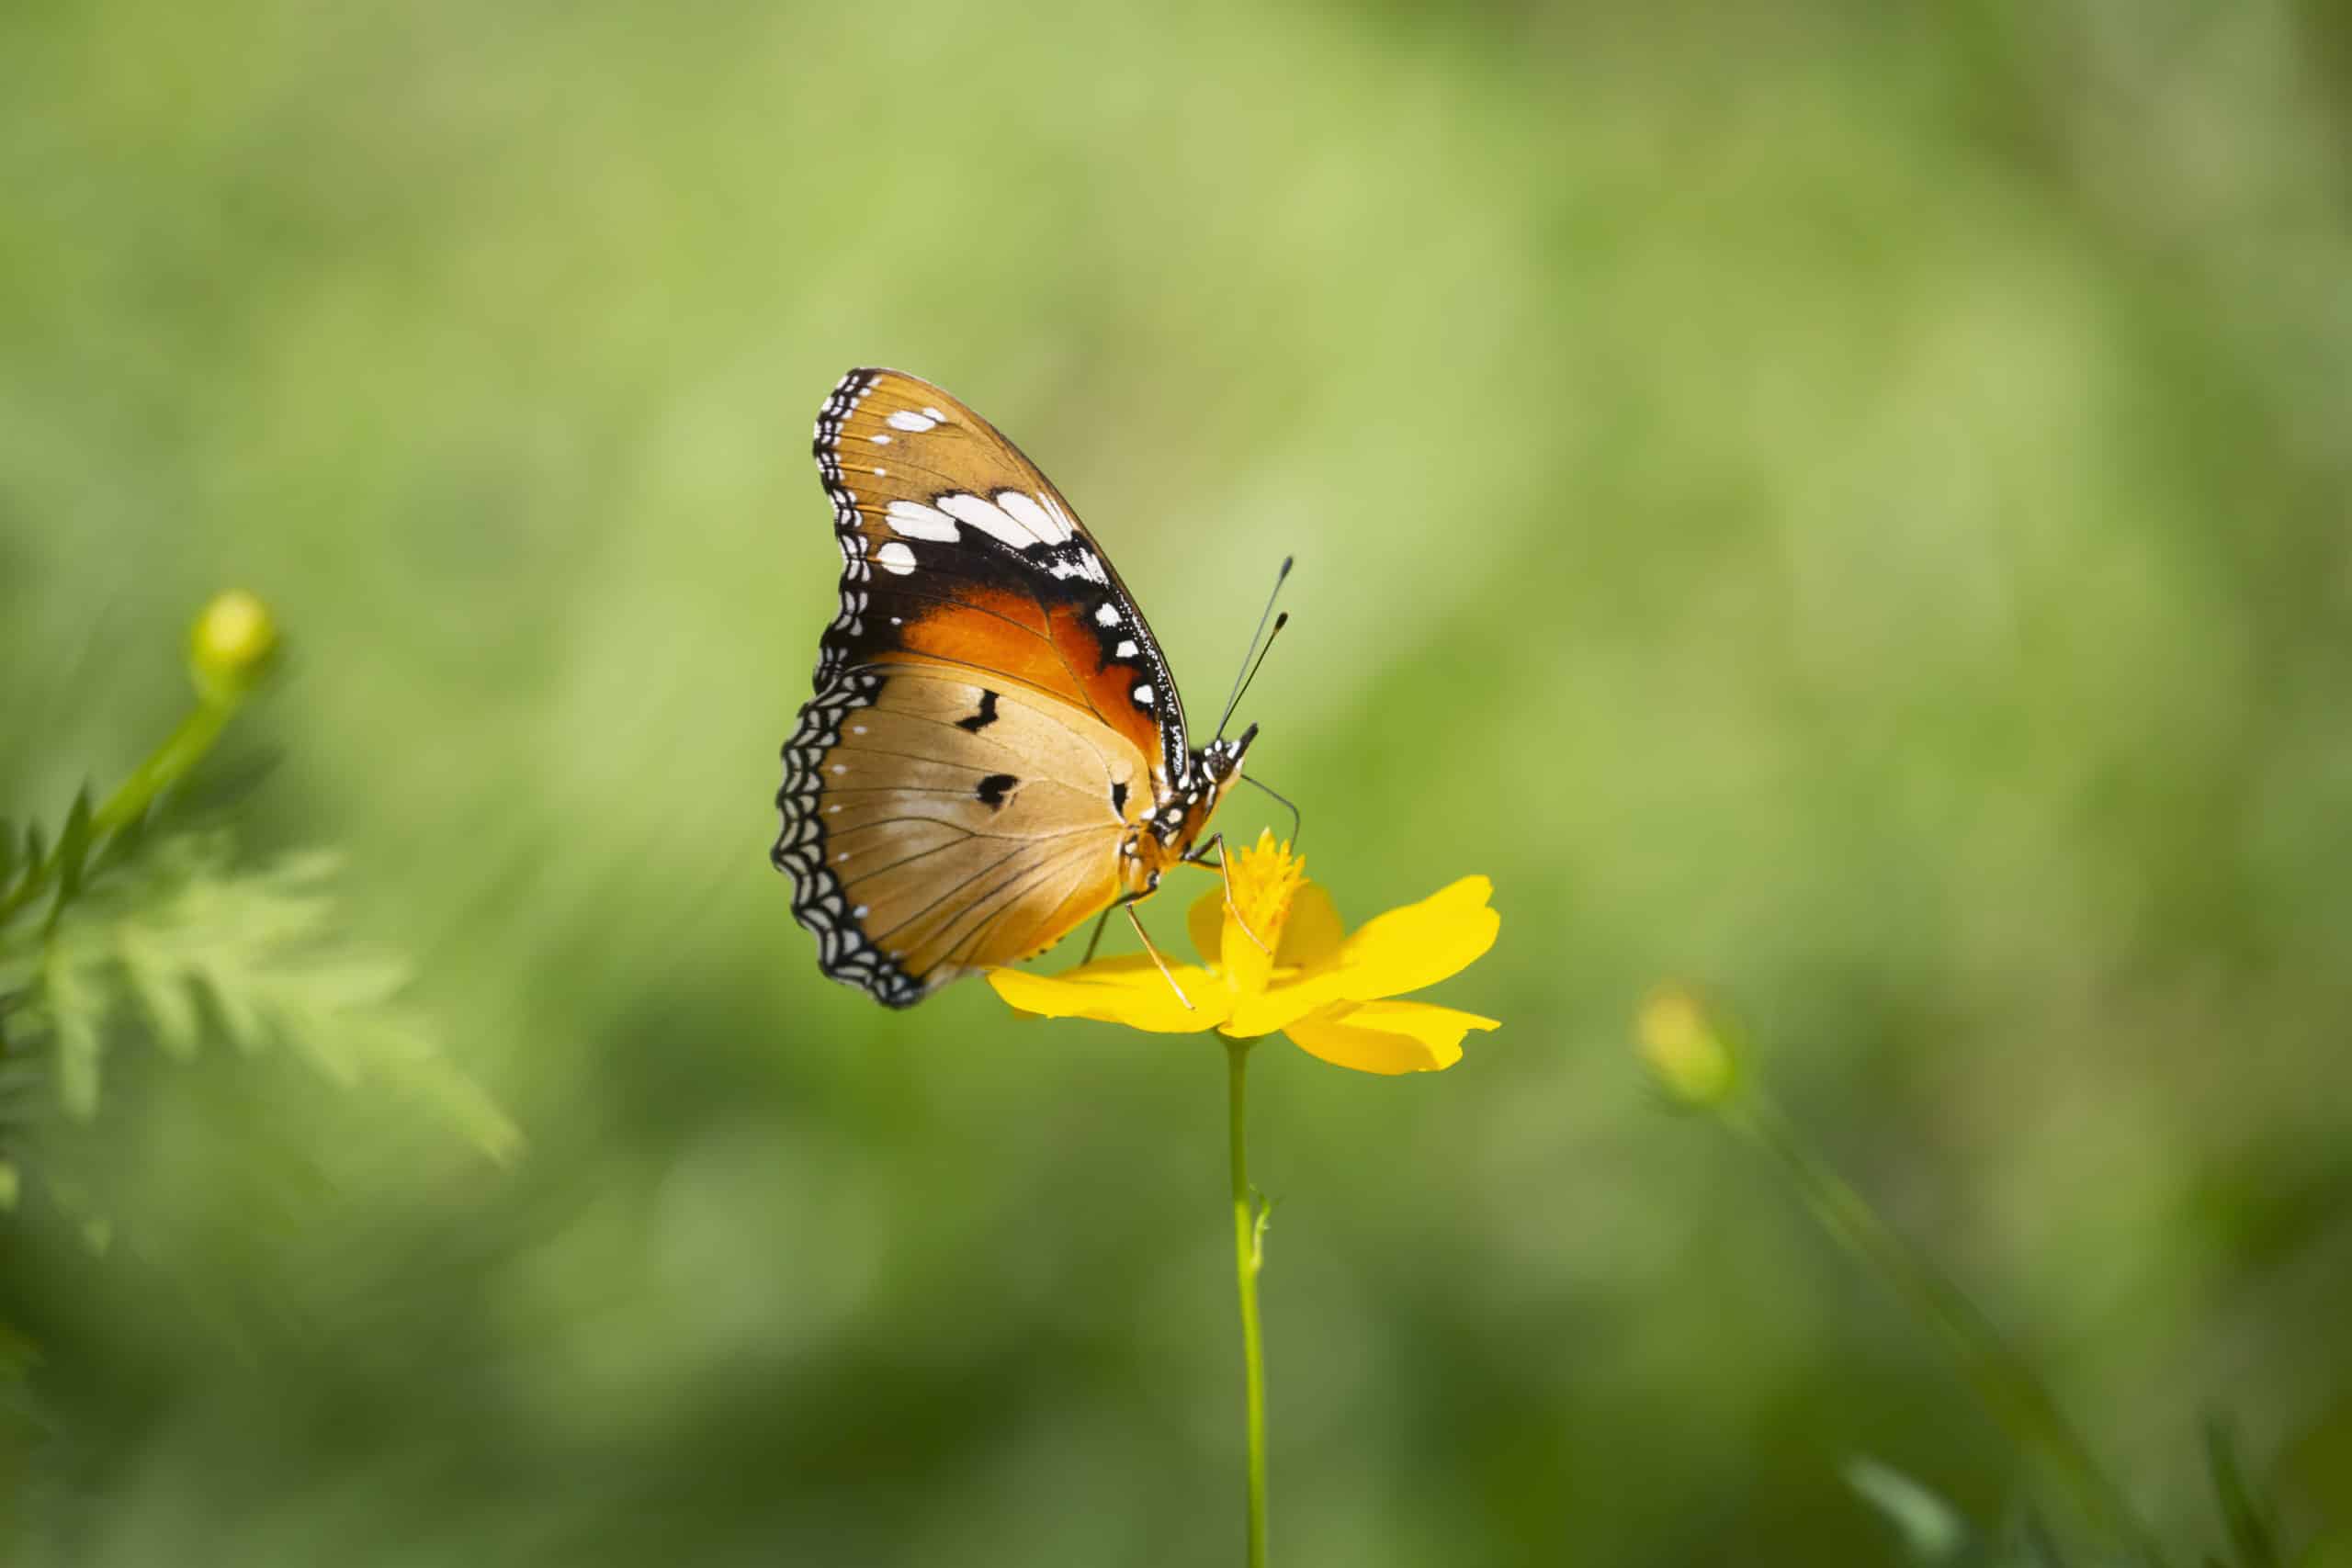 Fotografie Ploeg Benelux B.V. Fotograferen van vlinders 10 scaled